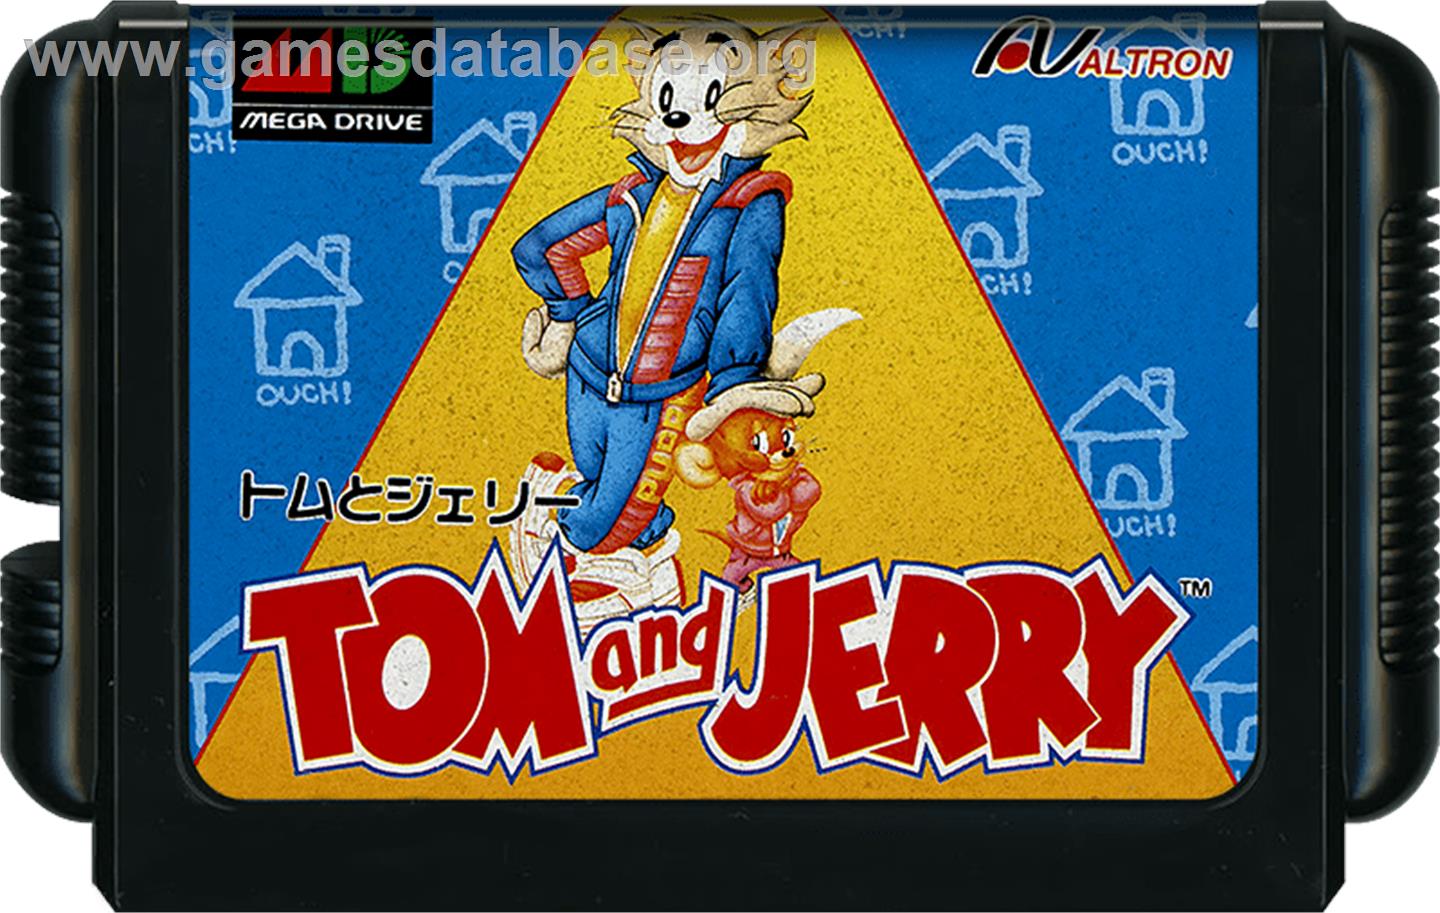 Tom and Jerry - Frantic Antics - Sega Genesis - Artwork - Cartridge